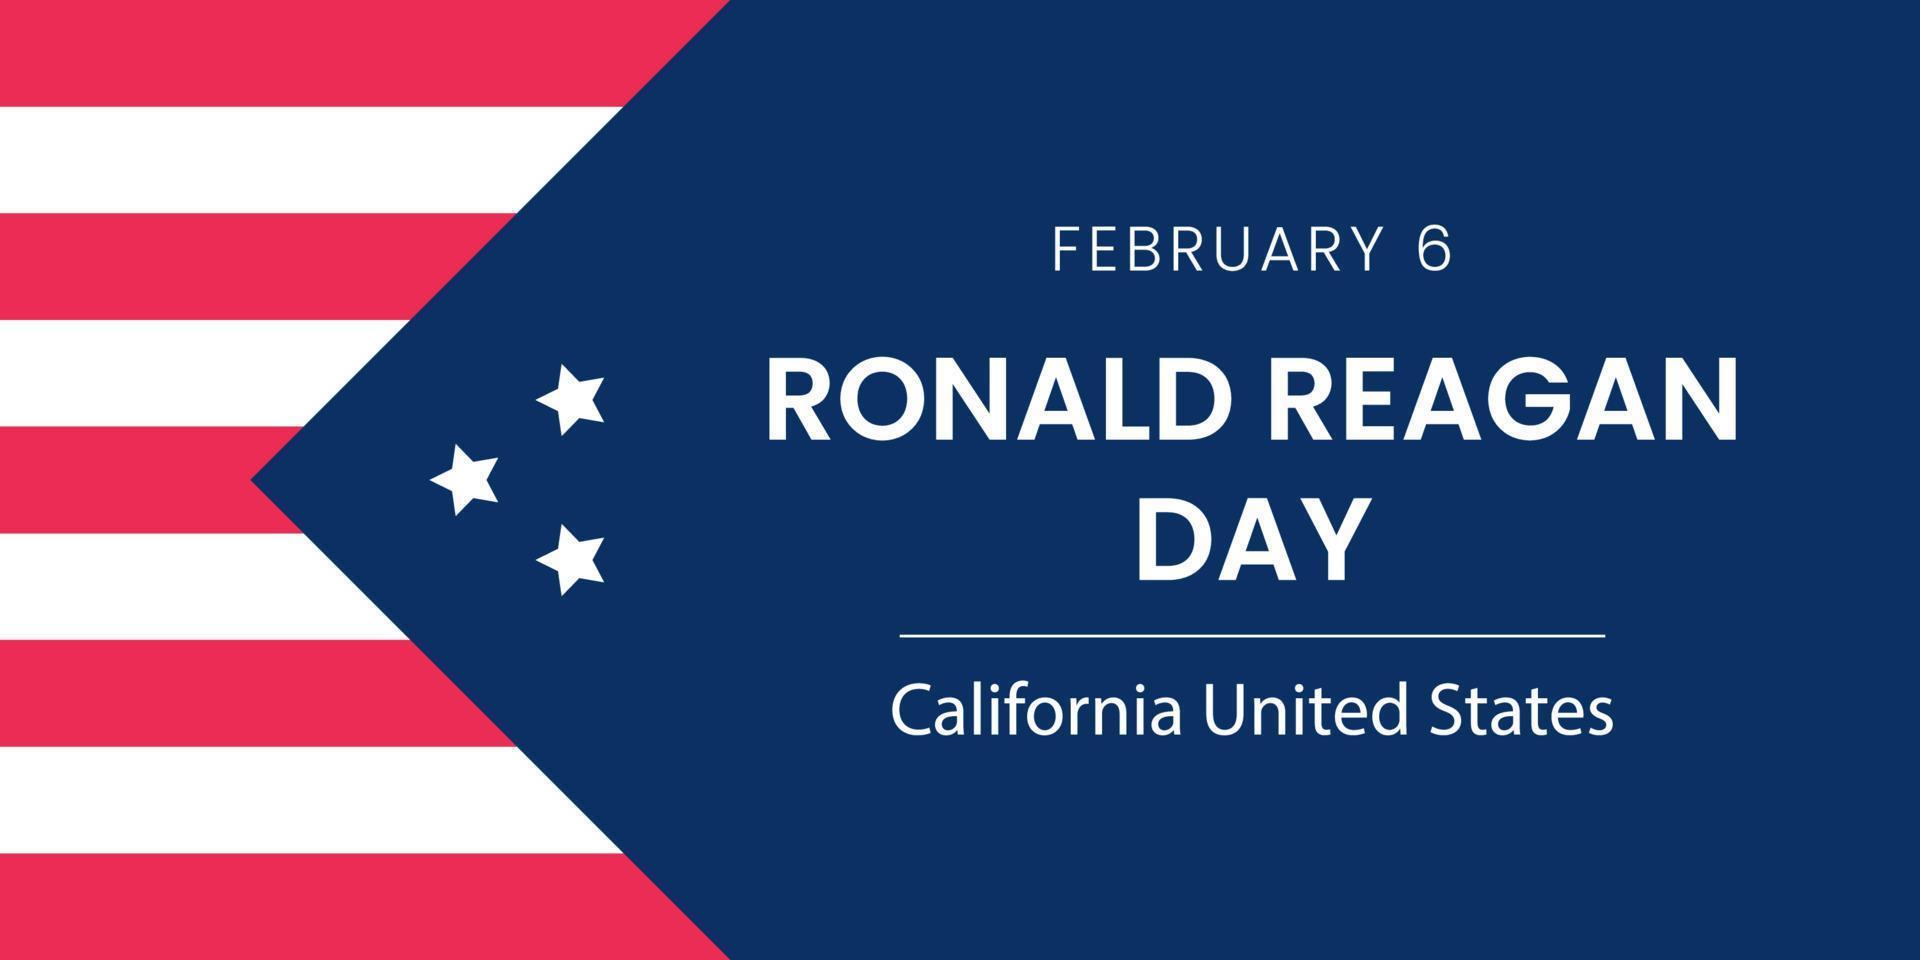 6. februar, ronald reagan day, kalifornien vereinigte staaten hintergrund vektor flachen stil. geeignet für Poster, Cover, Web, Social-Media-Banner.